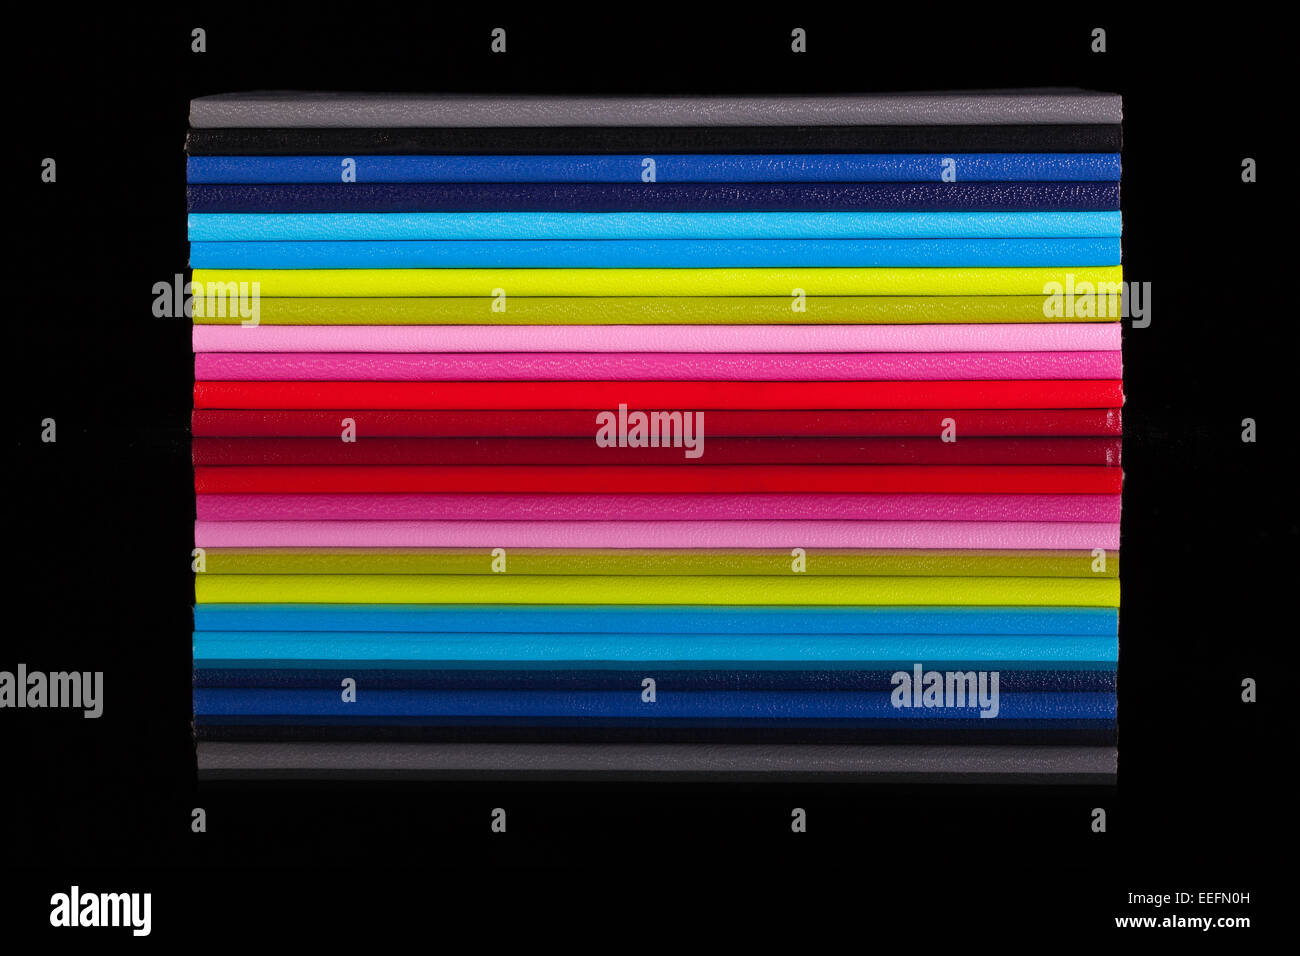 Douze journaux de couleur différente sur un bureau en verre noir Banque D'Images